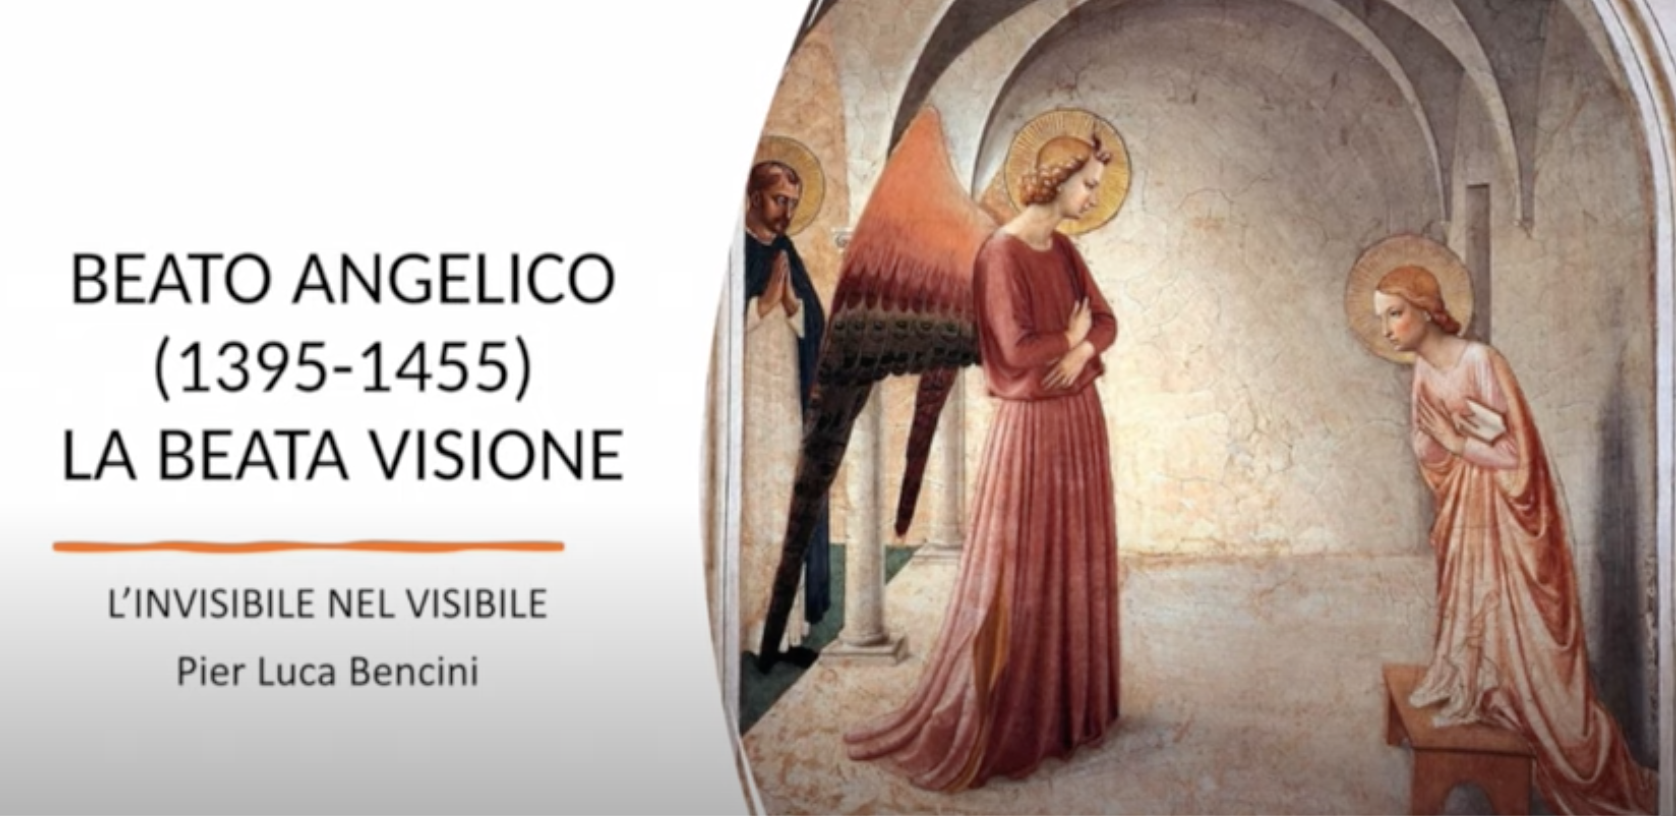 Featured image for “Barzanò (Lc): Beato Angelico. L’invisibile nel visibile con Pier Luca Bencini”